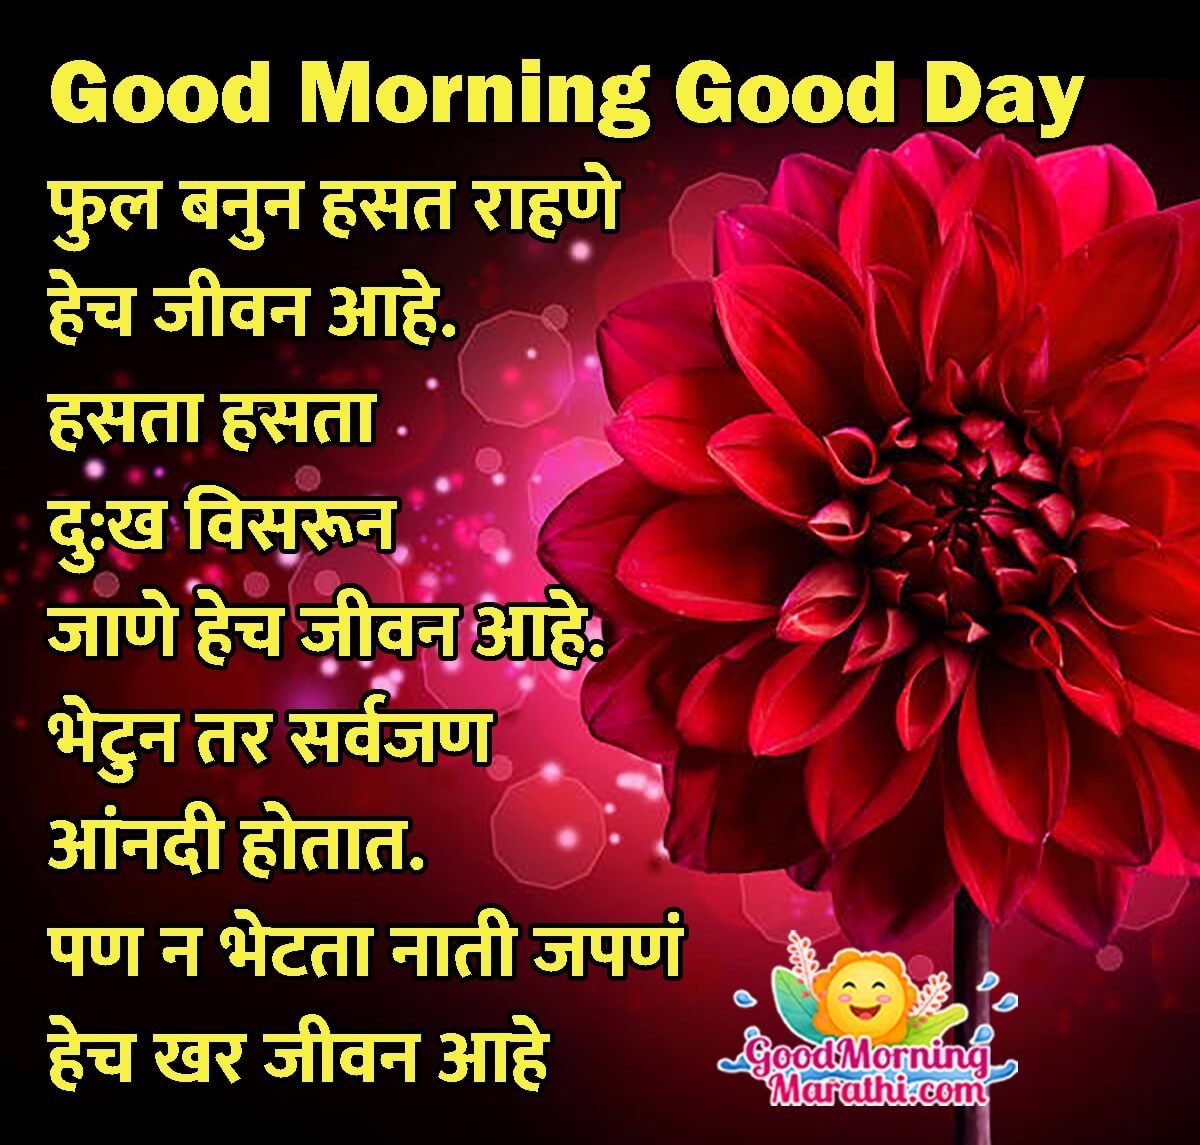 Good Morning Marathi Shayari Images - Good Morning Wishes & Images ...